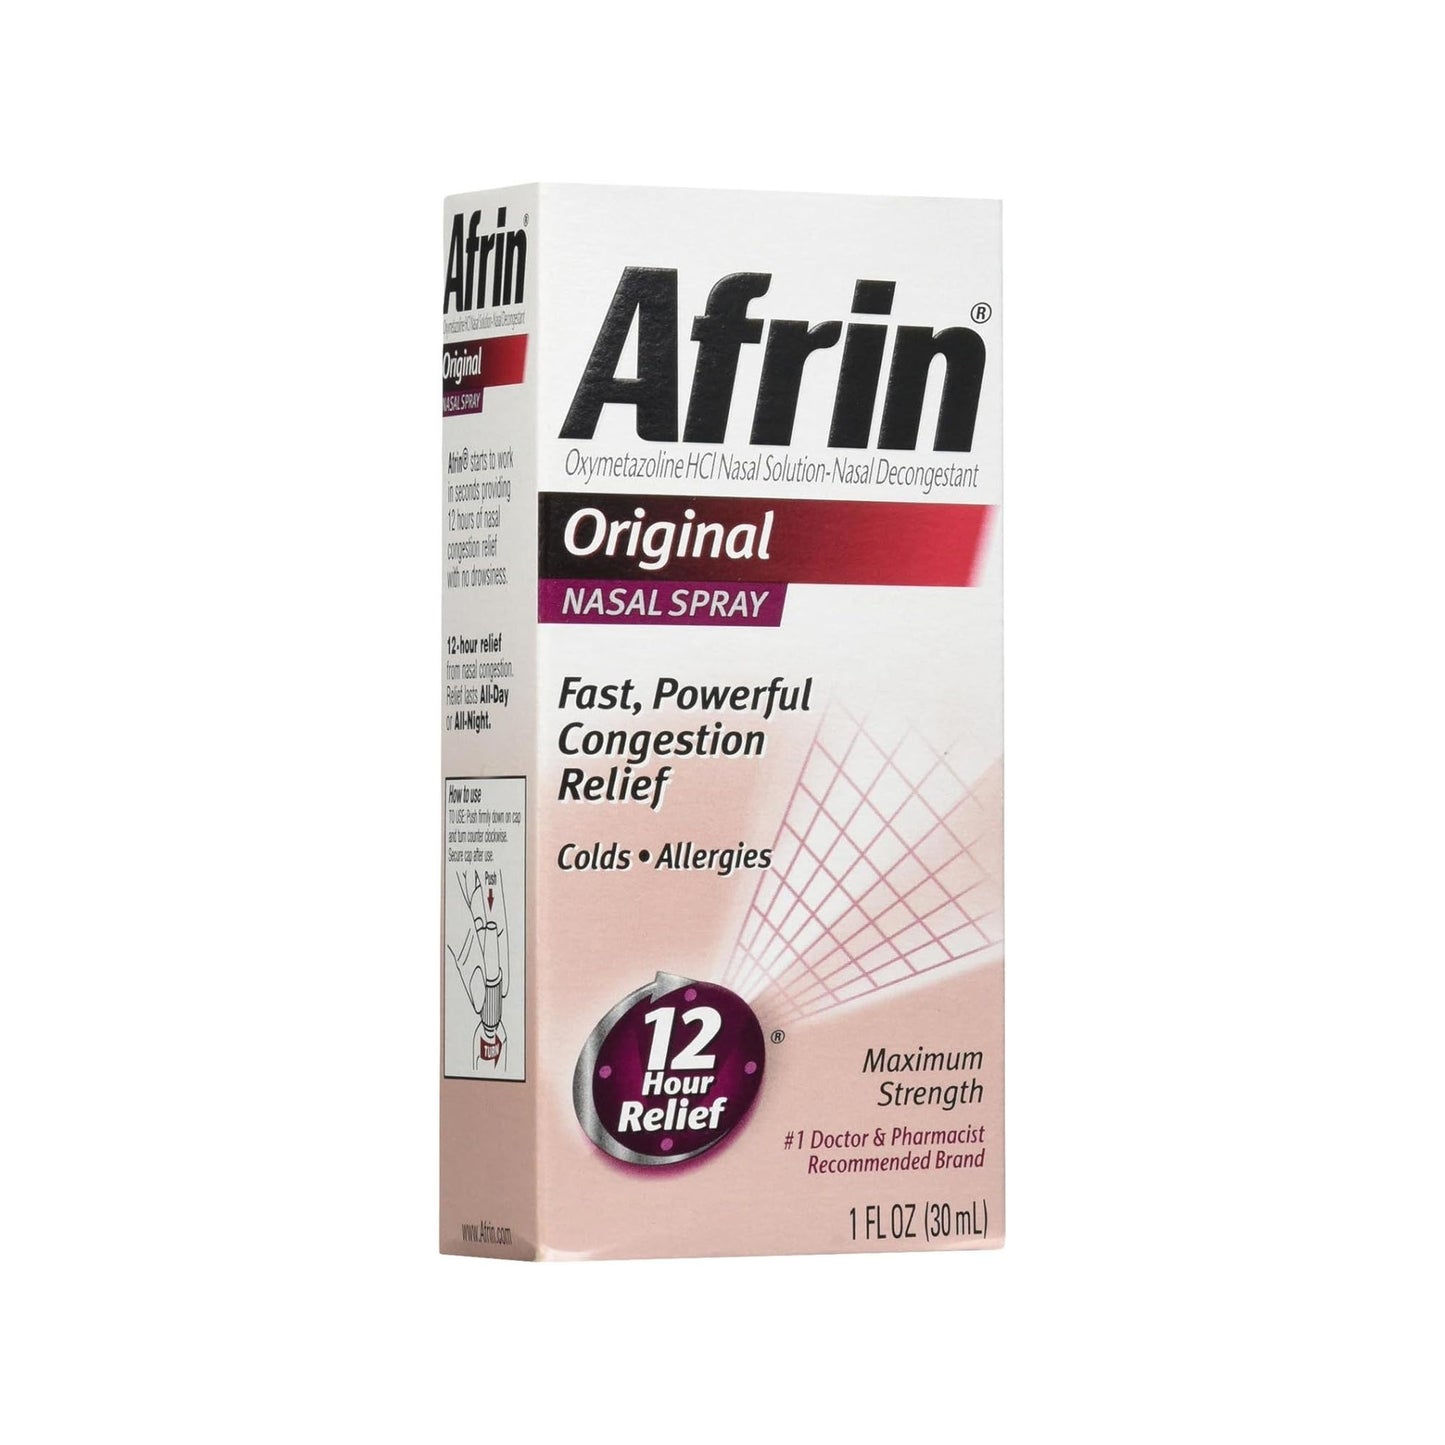 Afrin Original Oxymetazoline Nasal Sinus Relief Mist, 1 fl. oz.